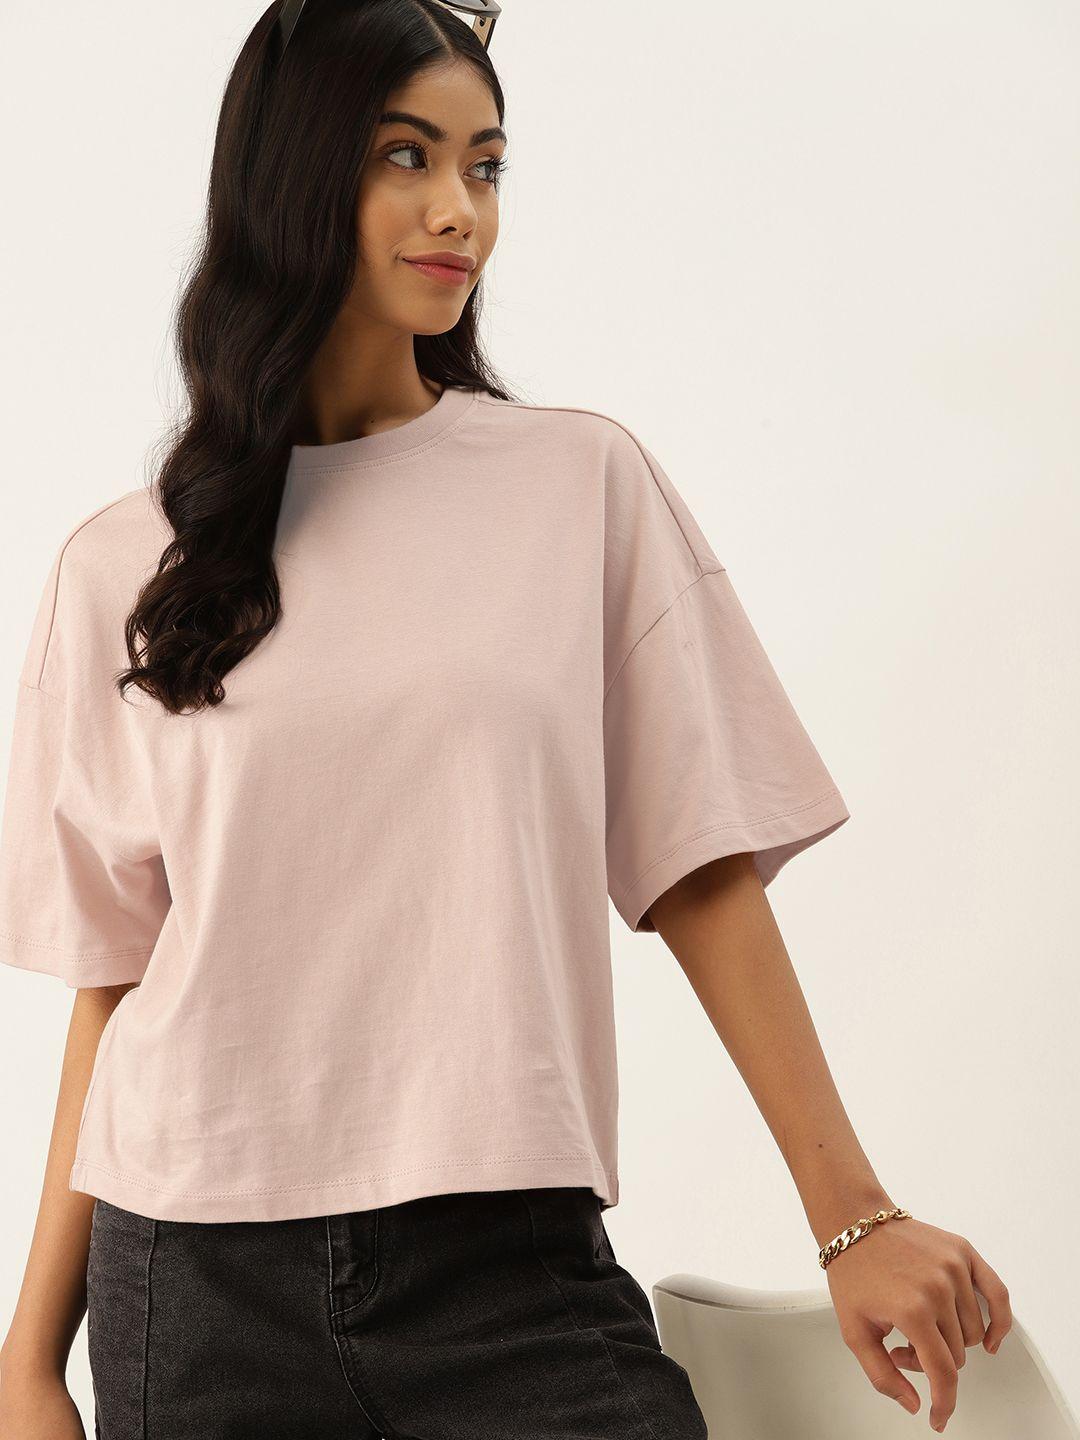 dressberry-pure-cotton-t-shirt